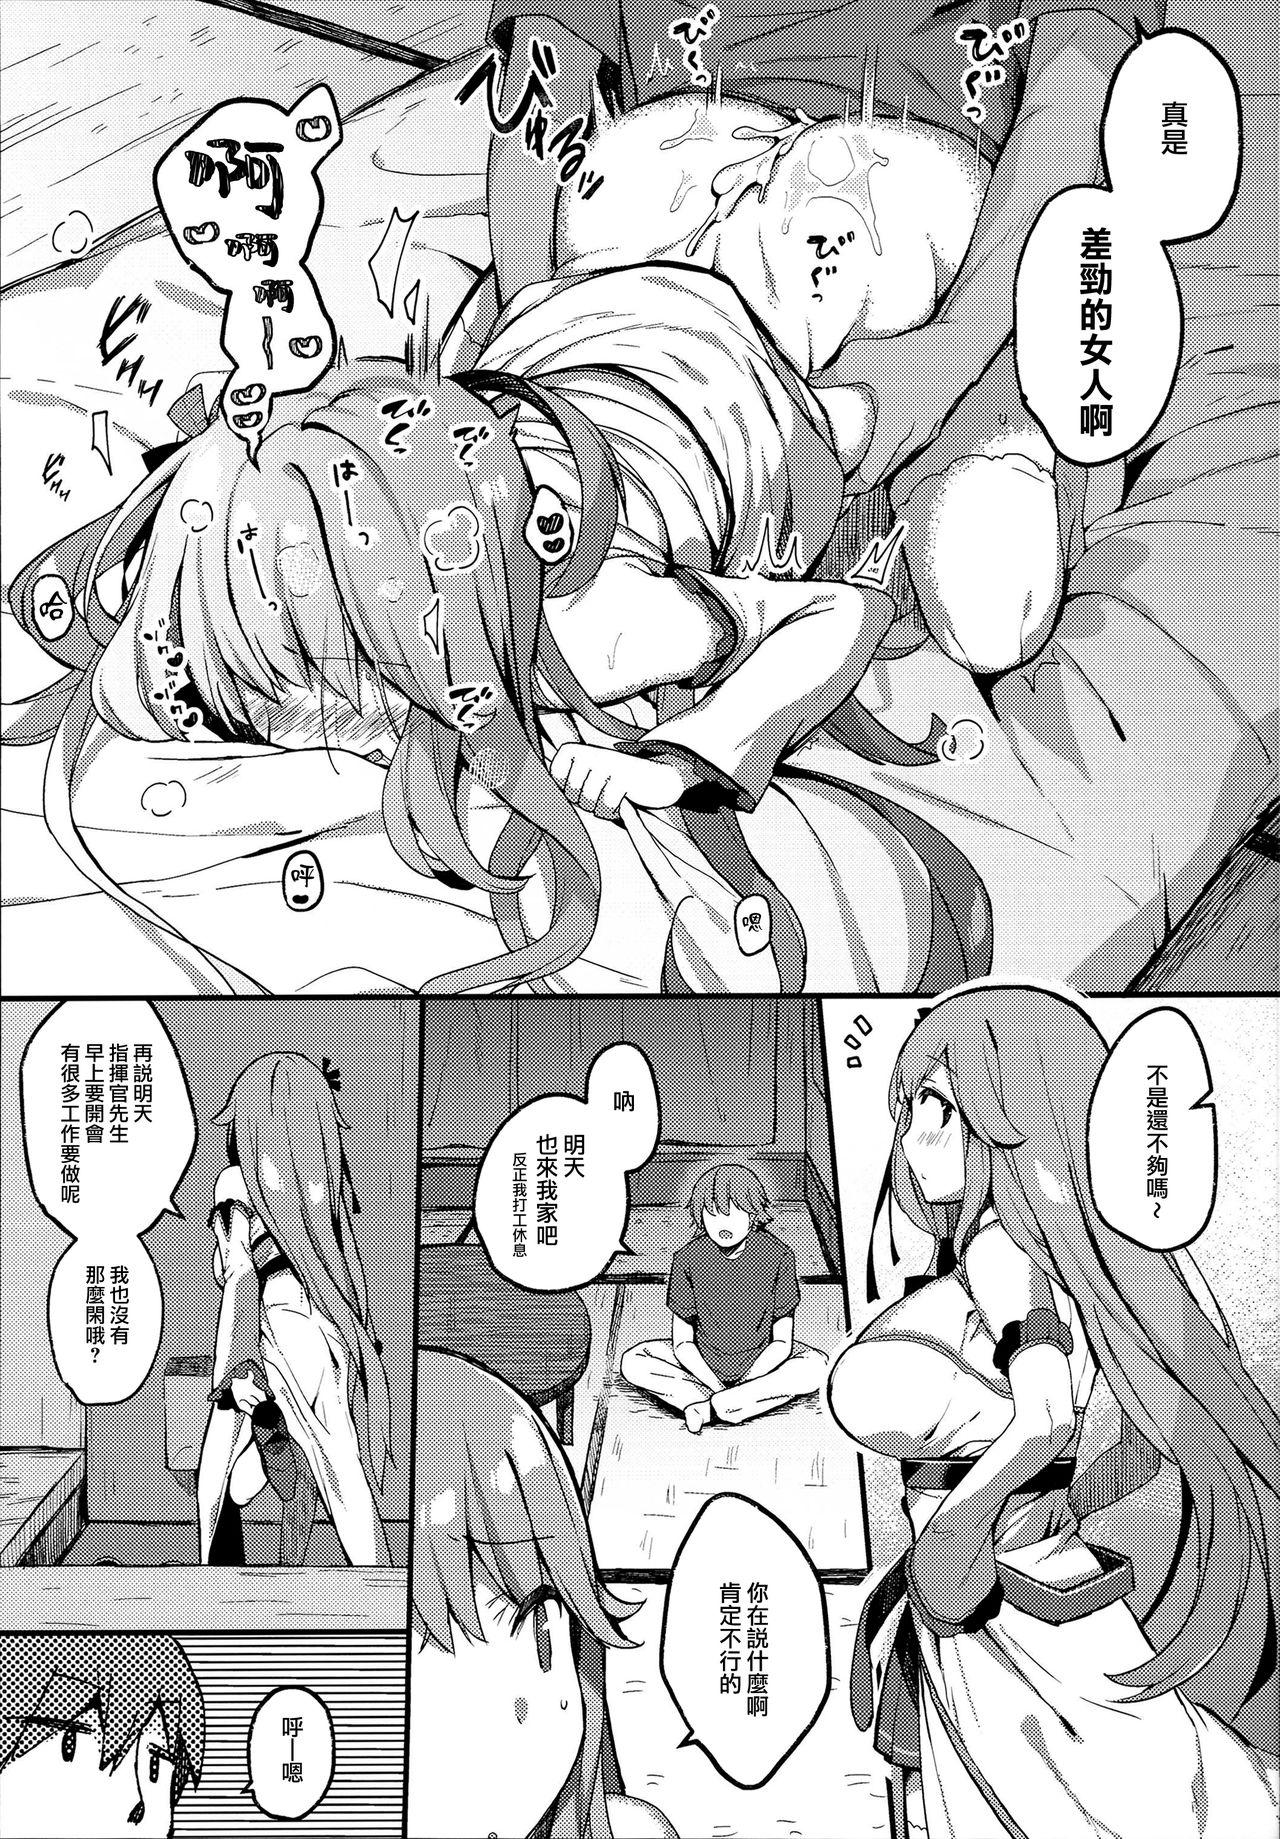 Erotic Suiyou no Kimi wa Saitei - Azur lane Dildo - Page 11